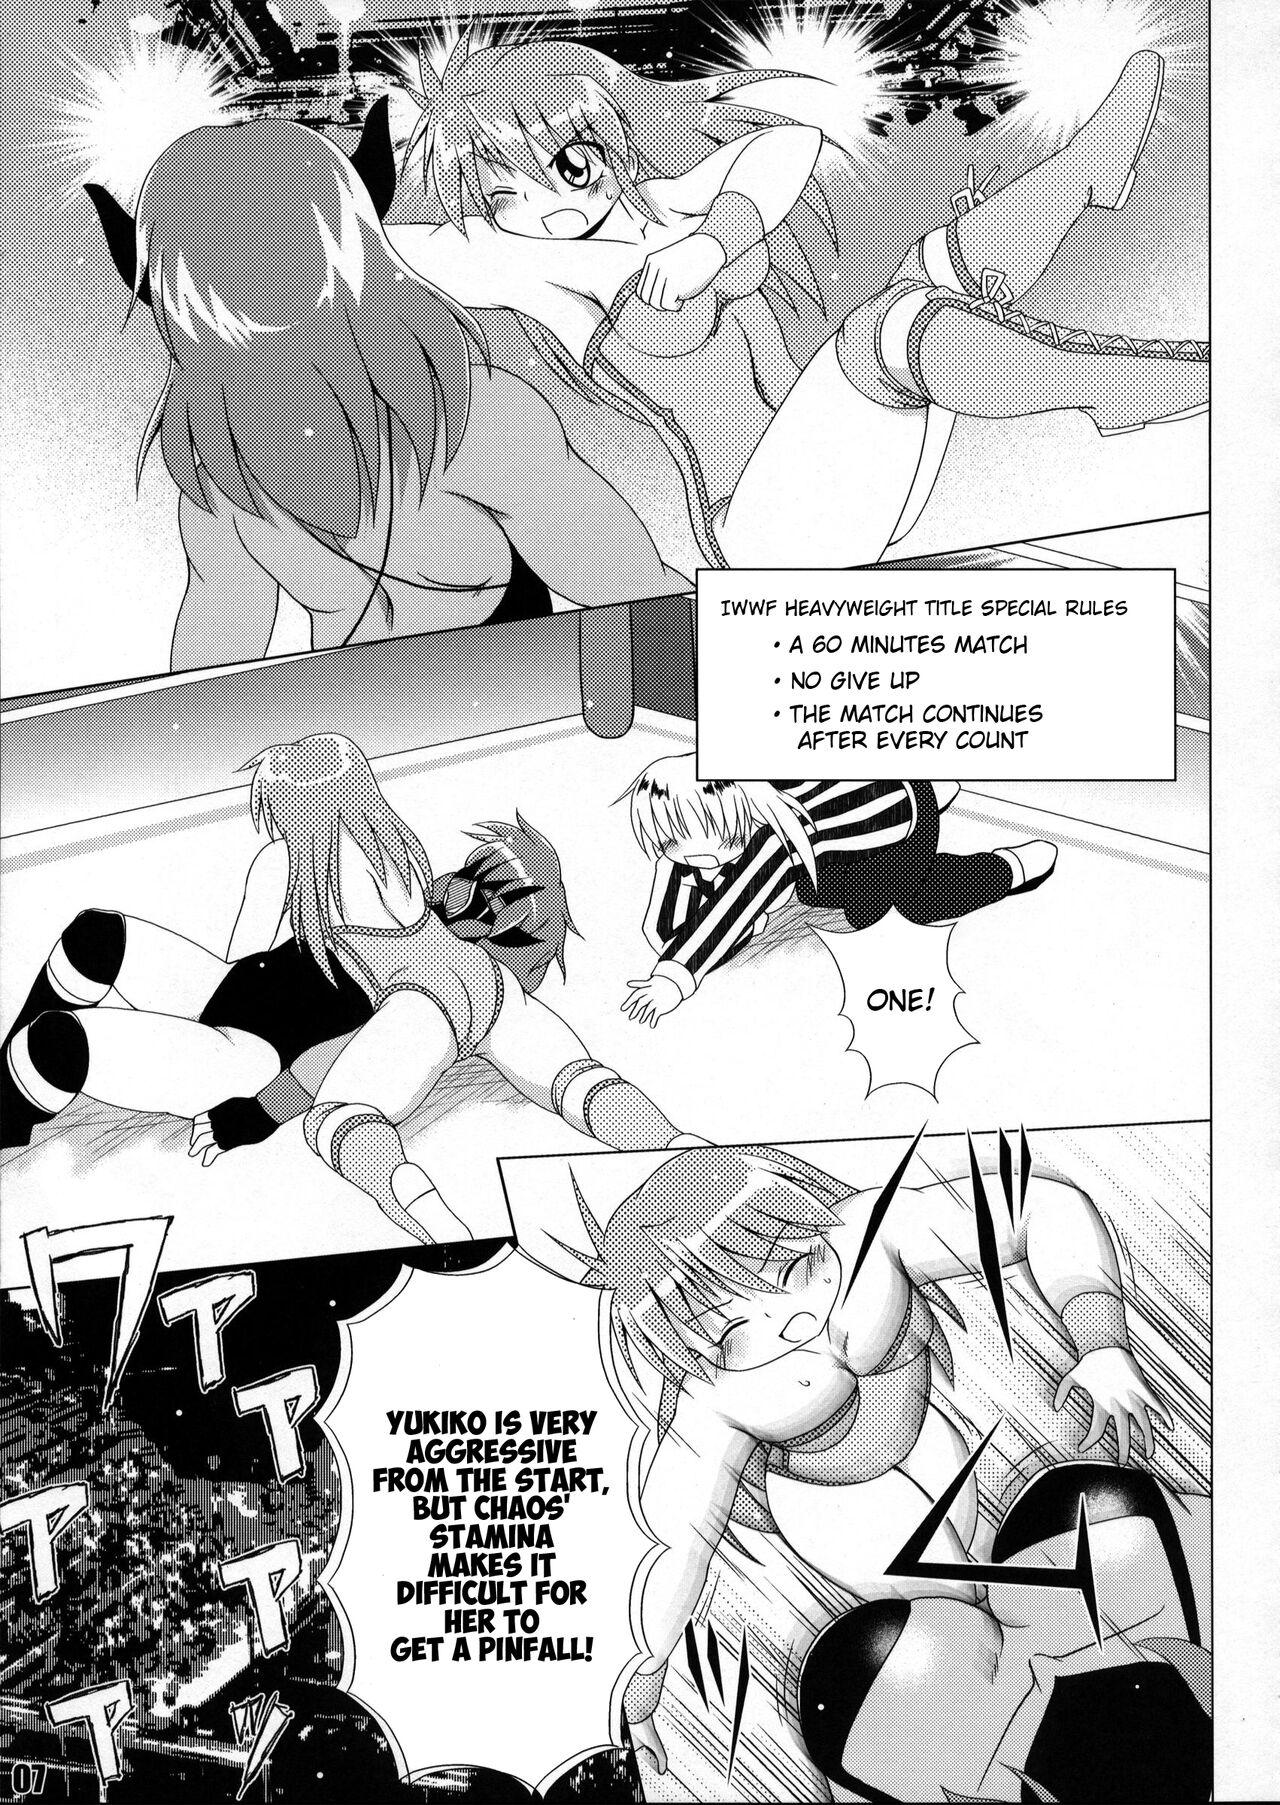 Soapy Massage (COMIC1☆6) [Soket=Pocket (Soket)] Mighty Yukiko vs Dark Star Chaos (FALLIN' ANGELS4 (WRESTLE ANGELS)) - Wrestle angels Girlnextdoor - Page 3